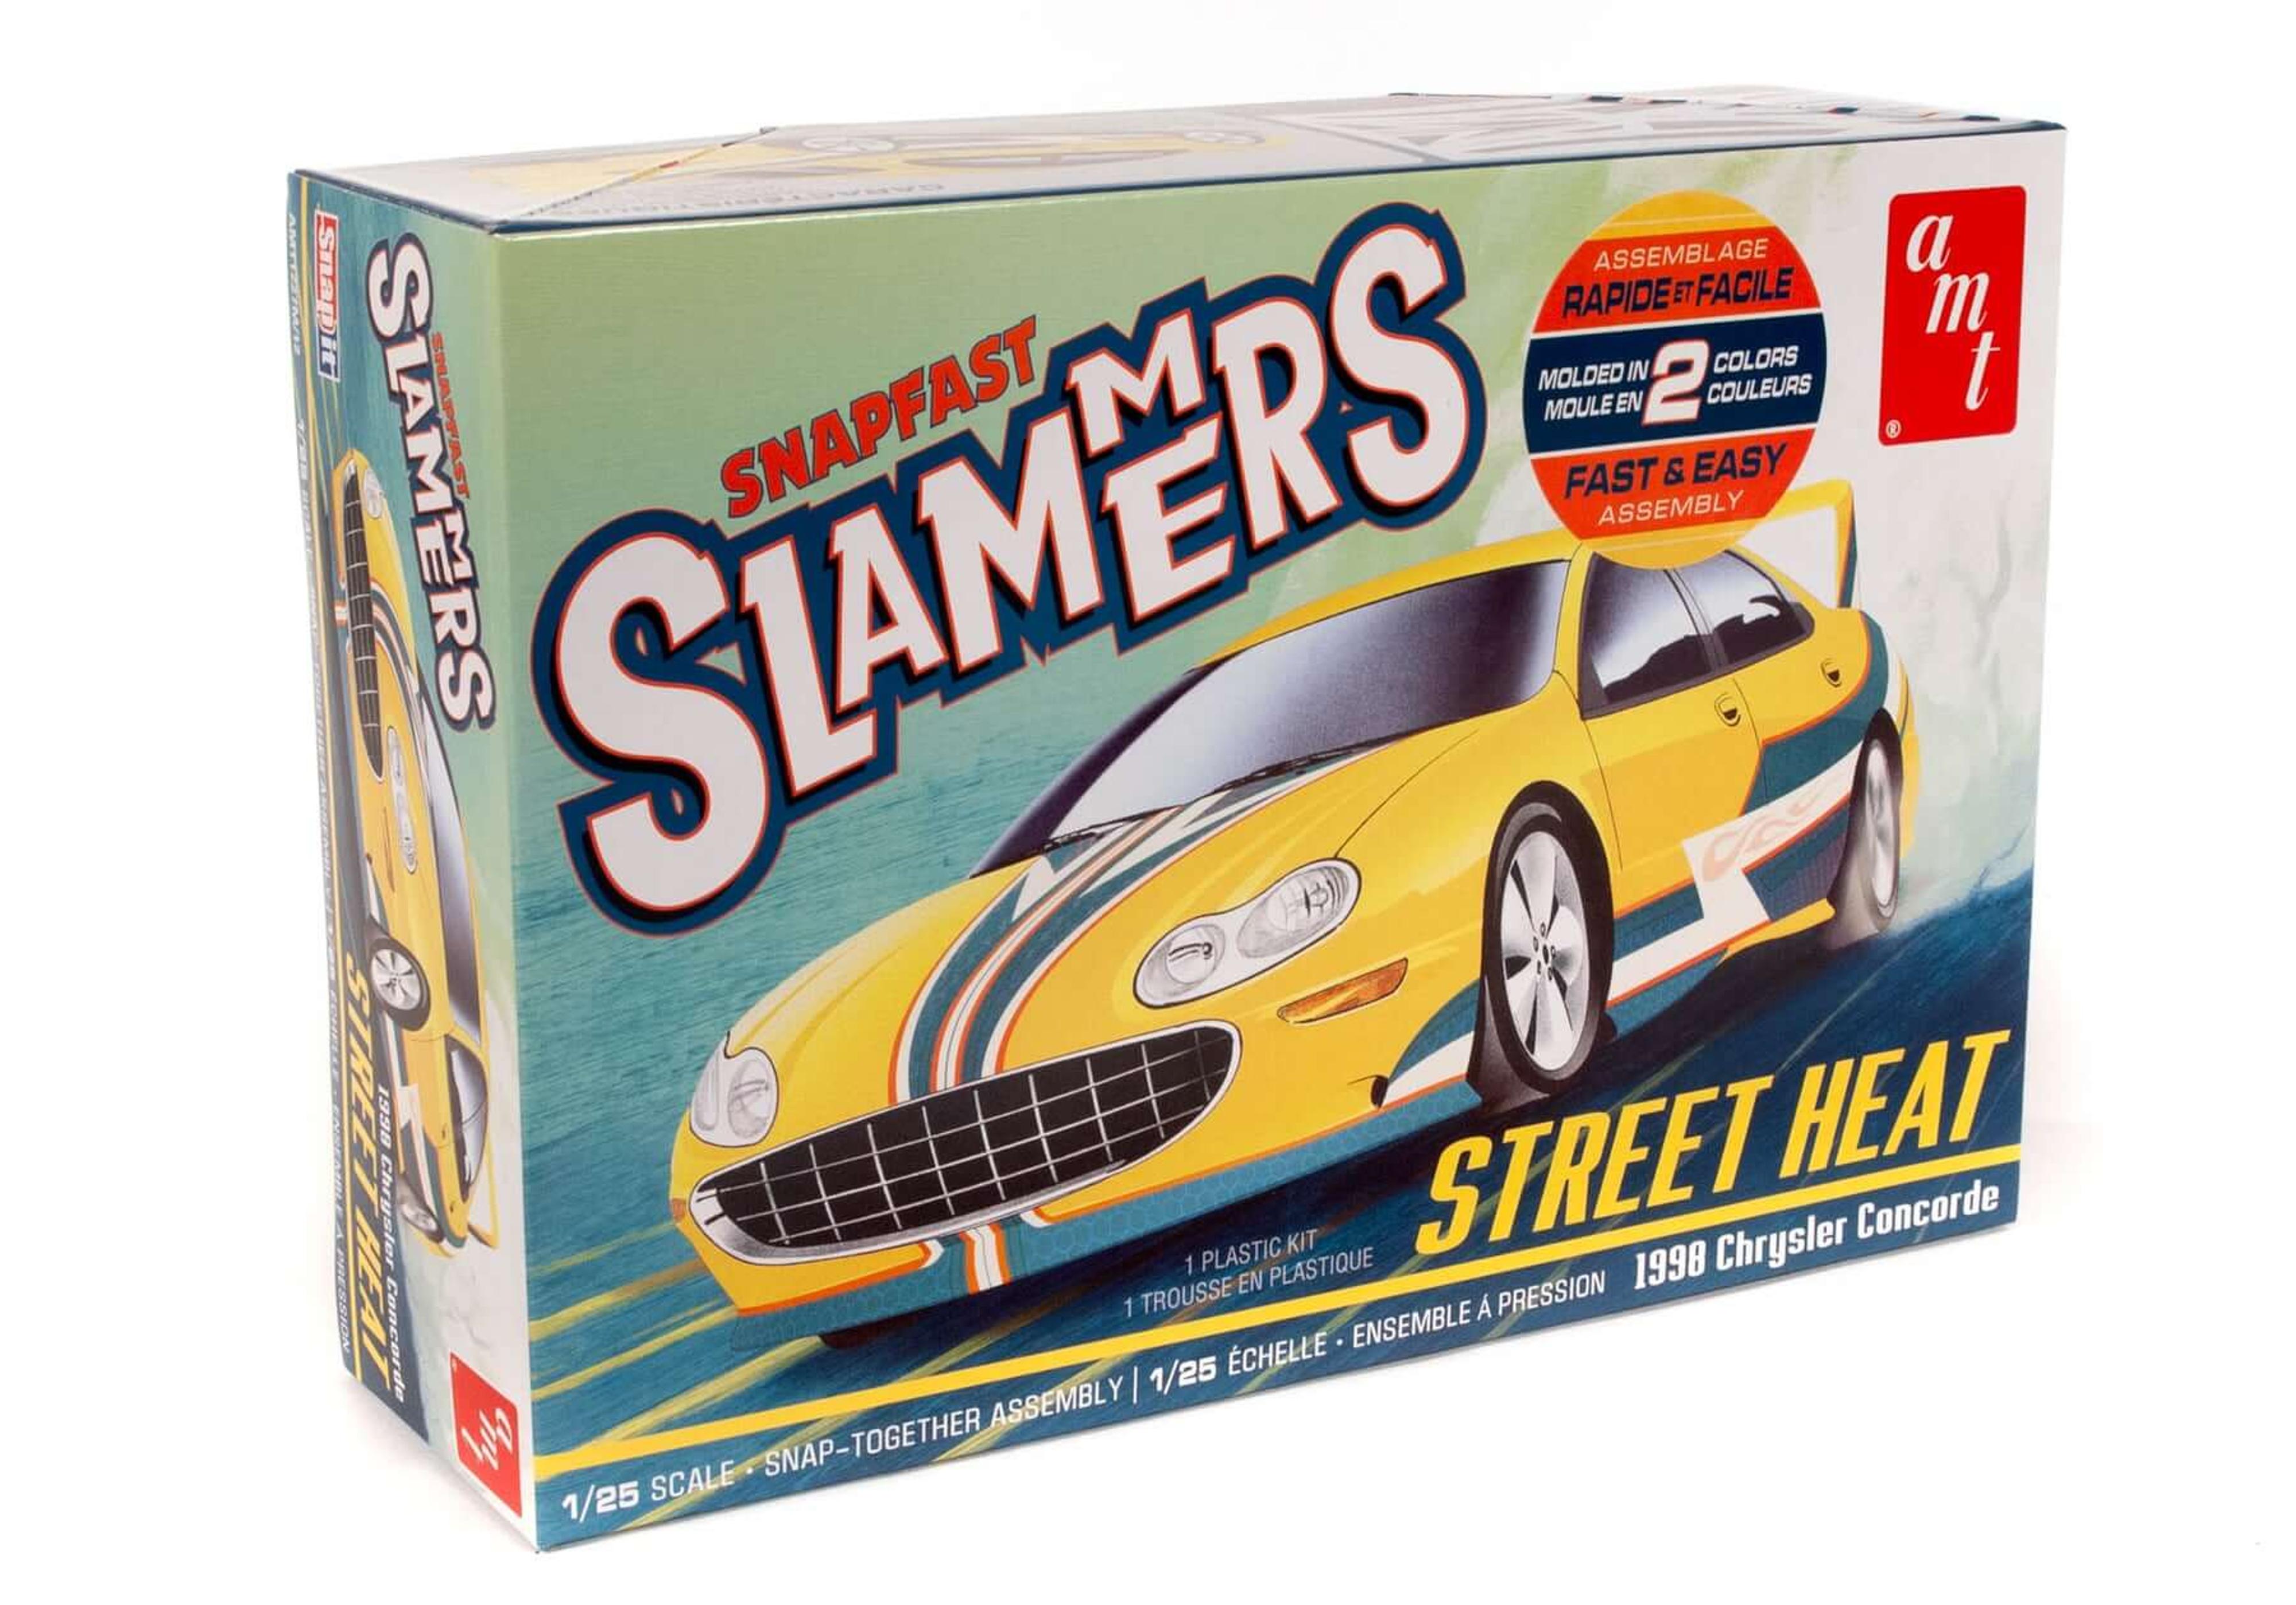 AMT 1/25 1998 Street Heat Chrysler Concorde Snapfast Slammers Model Kit